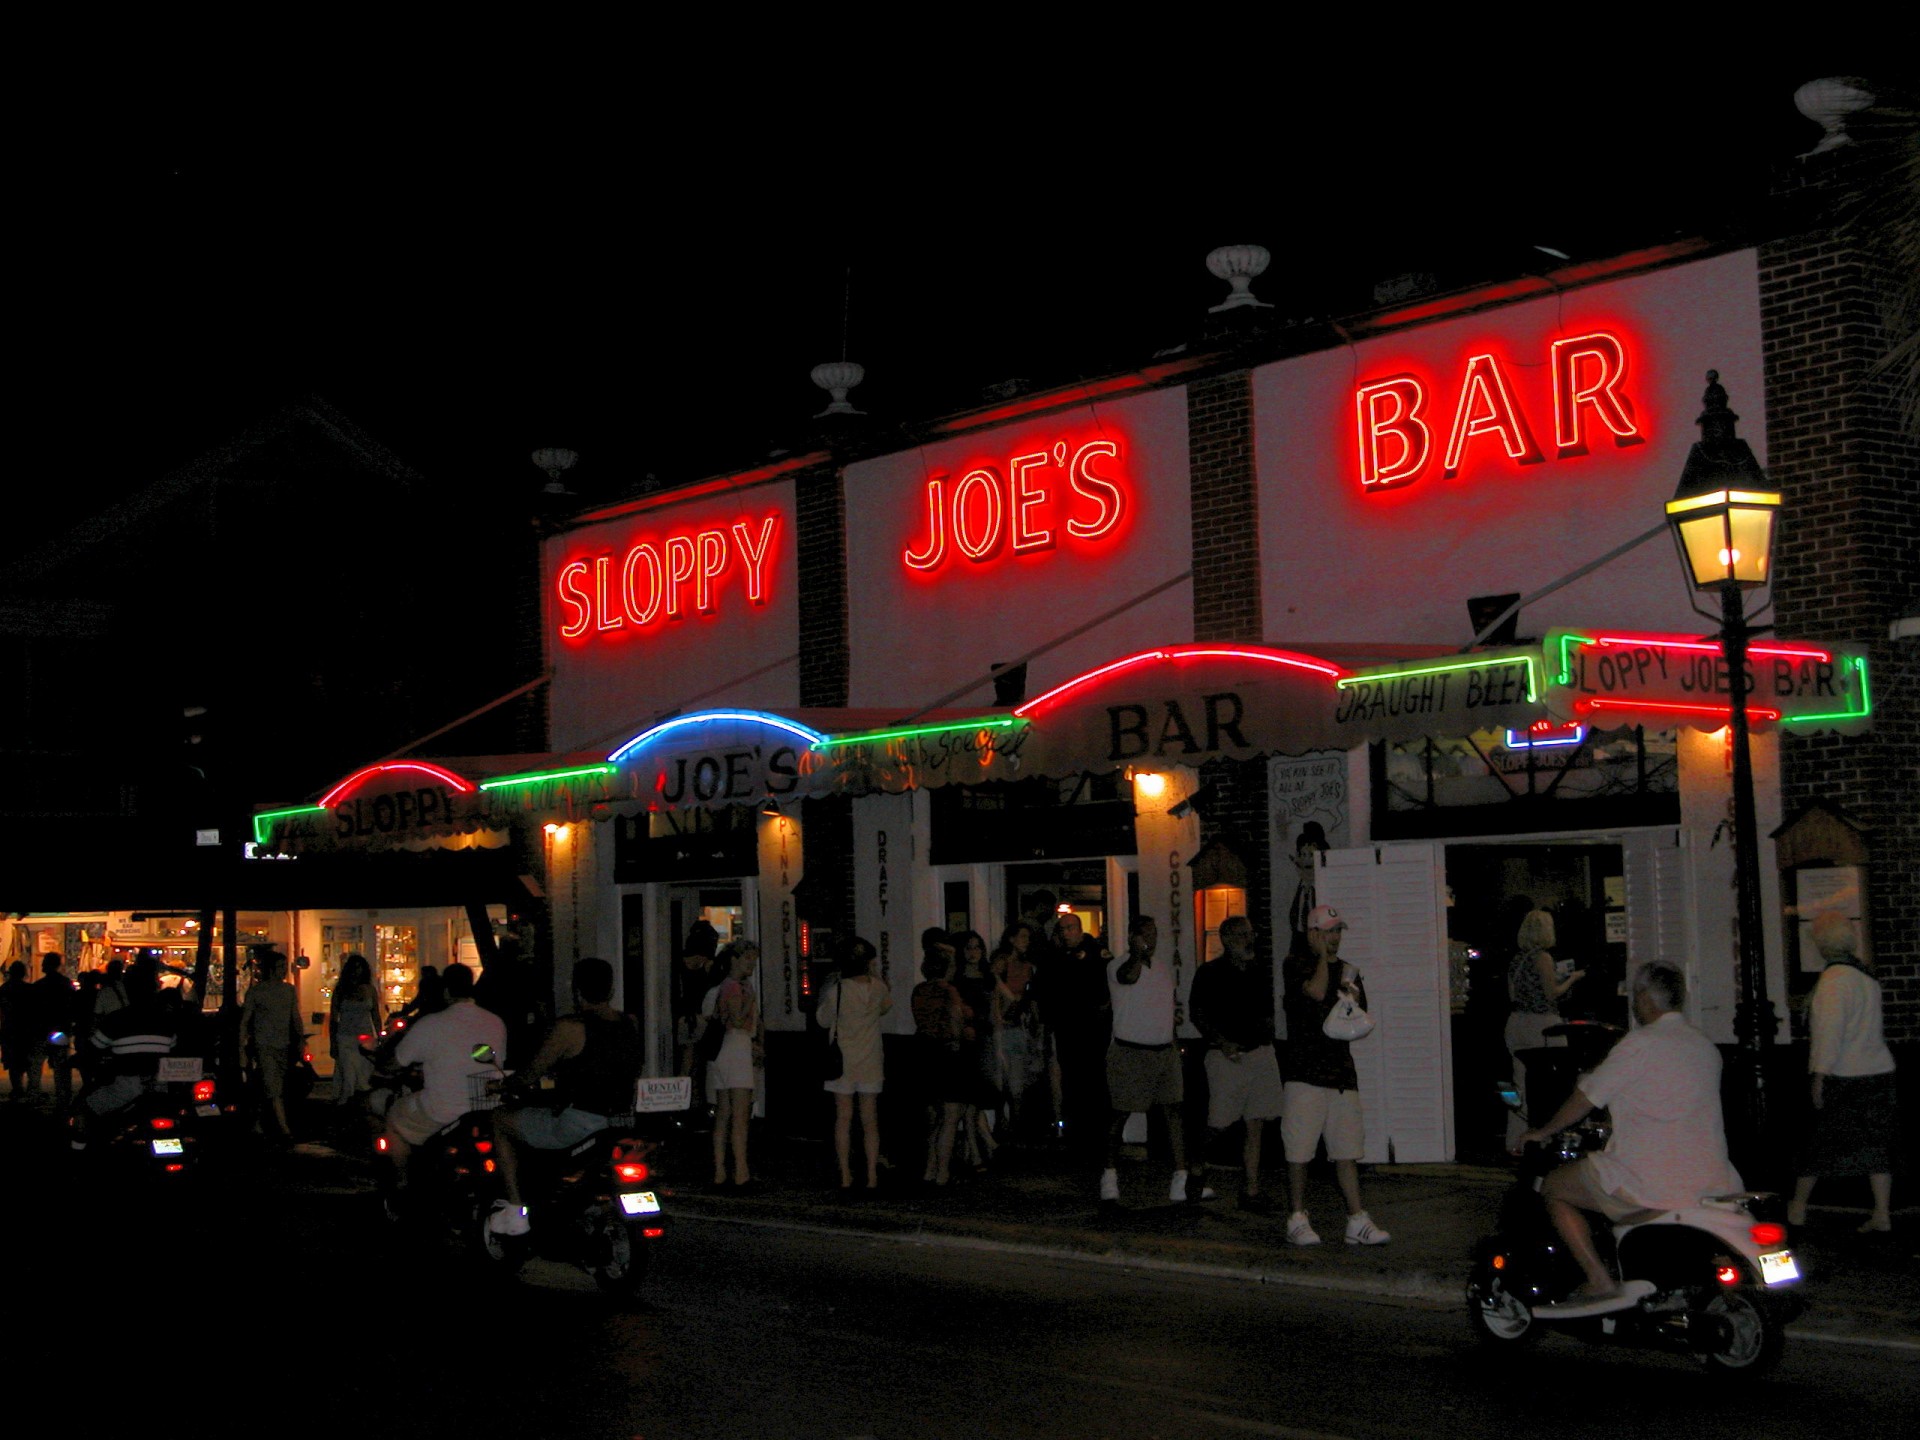 Sloppy Jose's